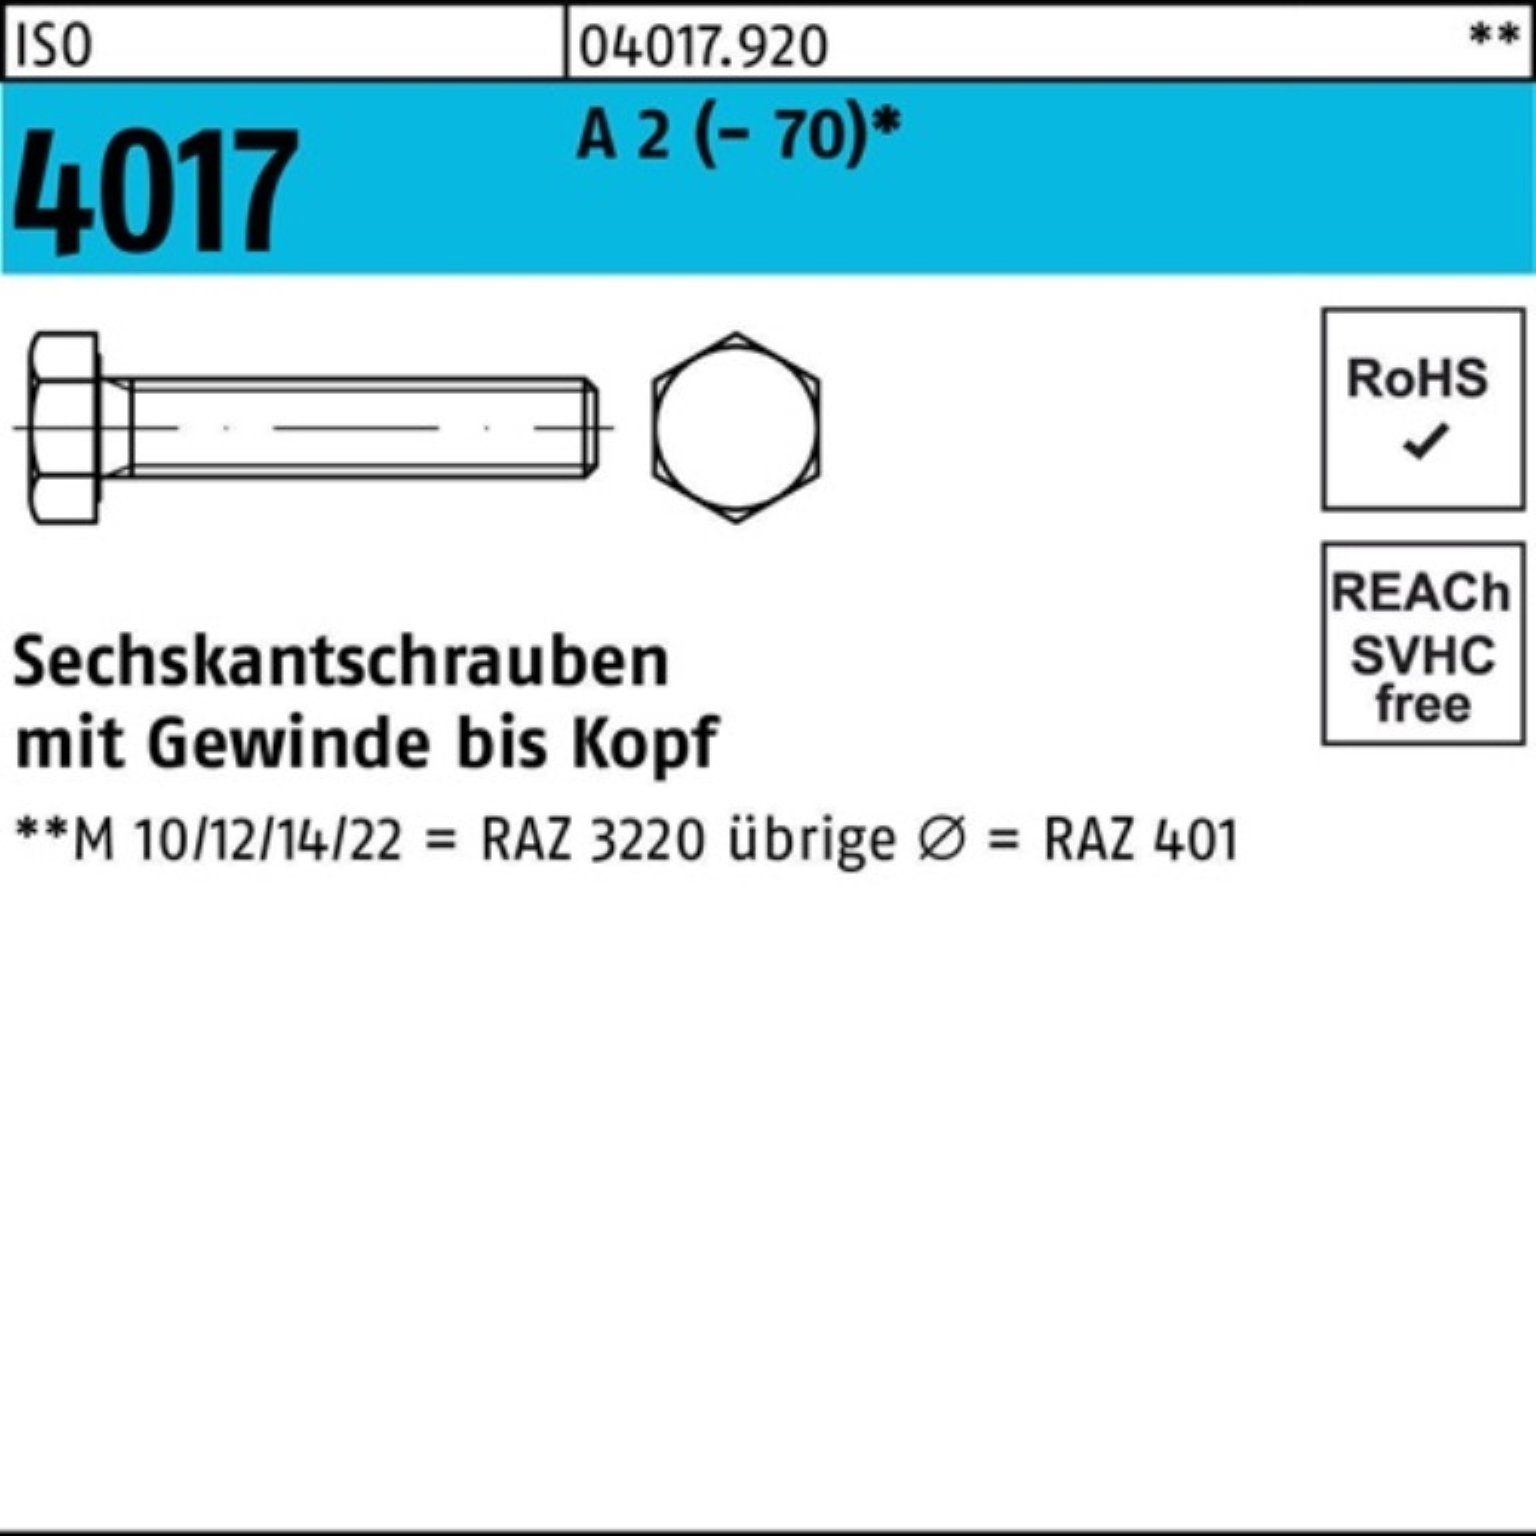 Bufab Sechskantschraube 100er Pack Sechskantschraube ISO 4017 VG M14x 30 A 2 (70) 50 Stück